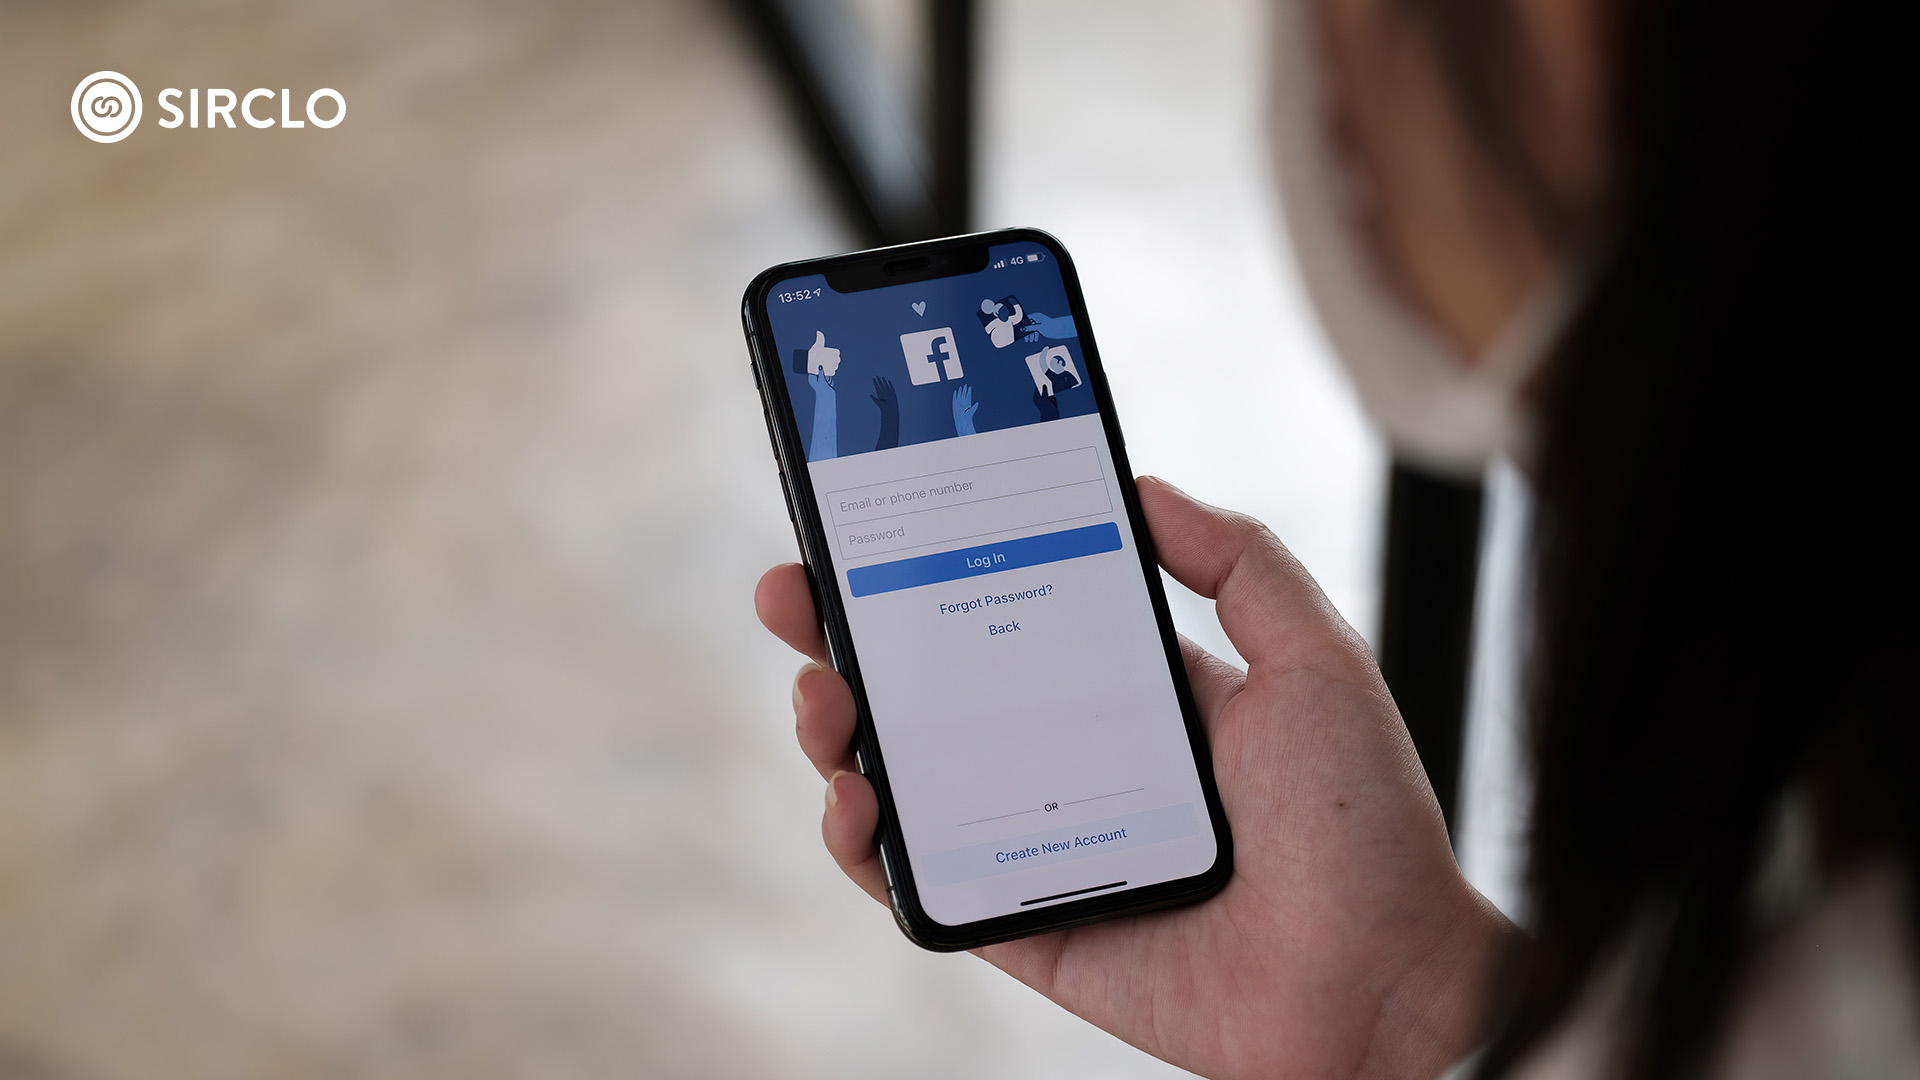 Cara Membuat Facebook Dengan Nama Perusahaan. Simak Cara Membuat Facebook Bisnis Terbaru, Lebih Mudah!